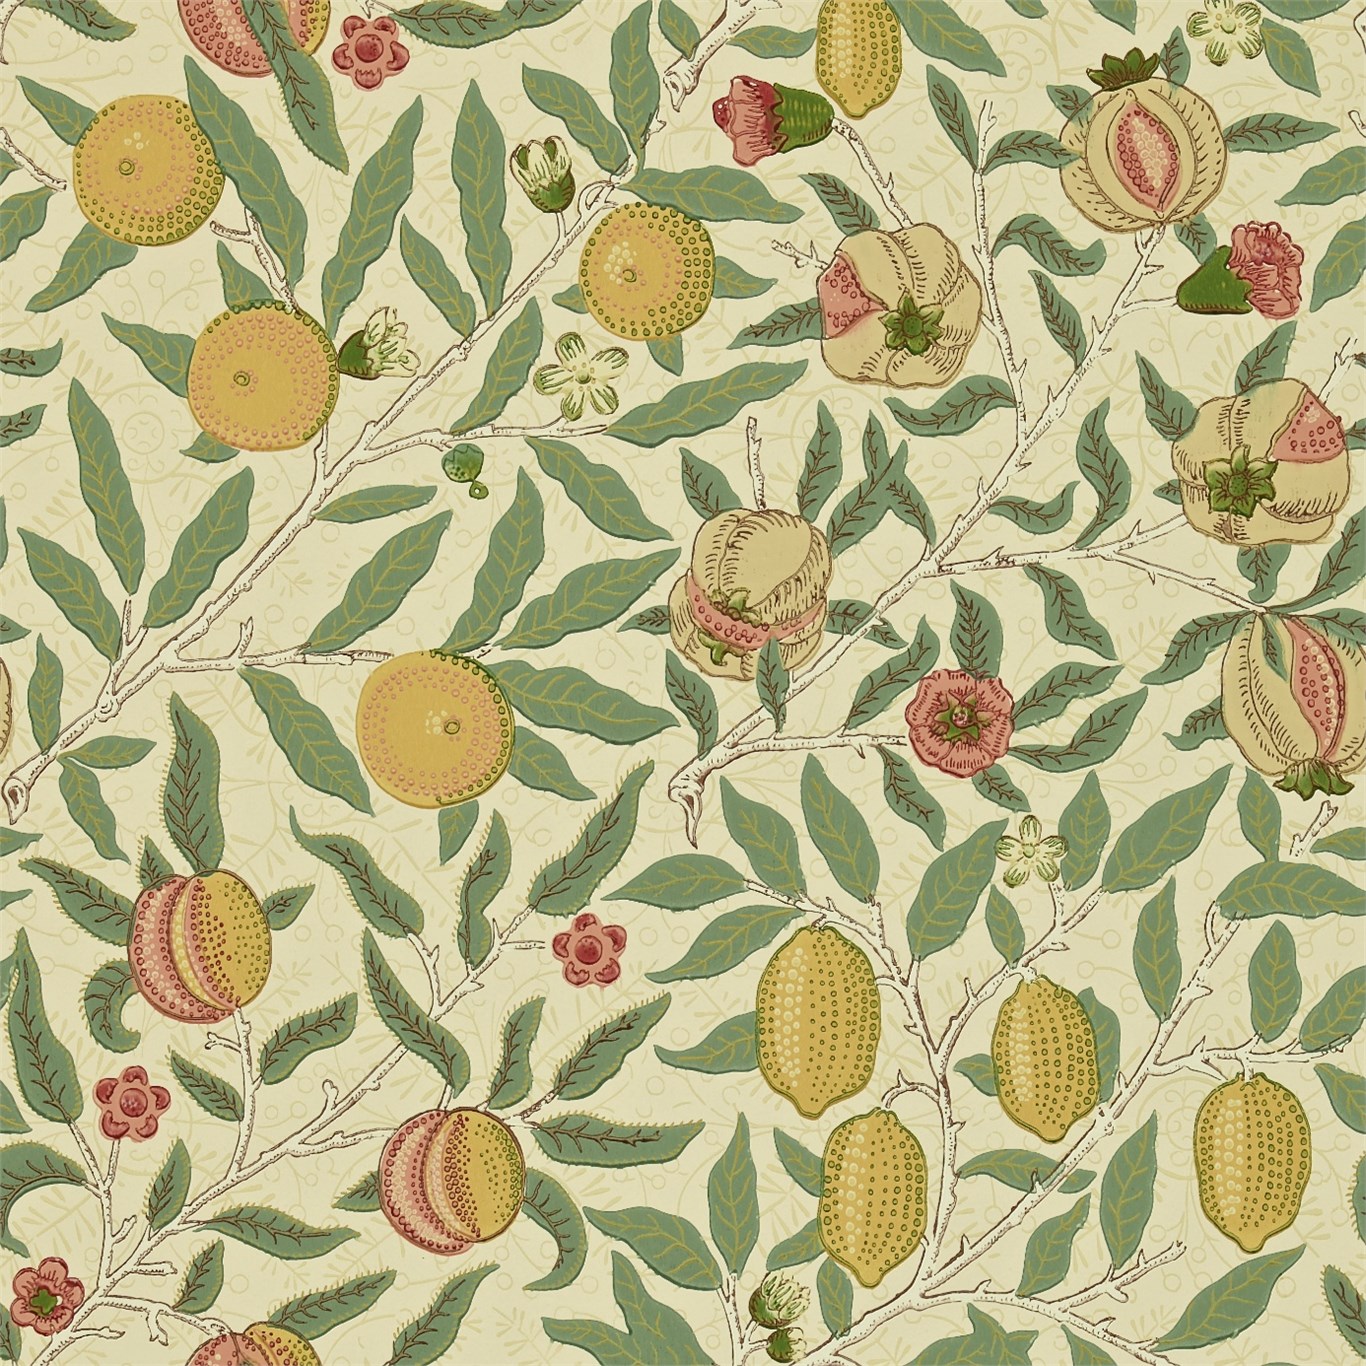 The Original Morris Co Arts And Crafts Fabrics Wallpaper